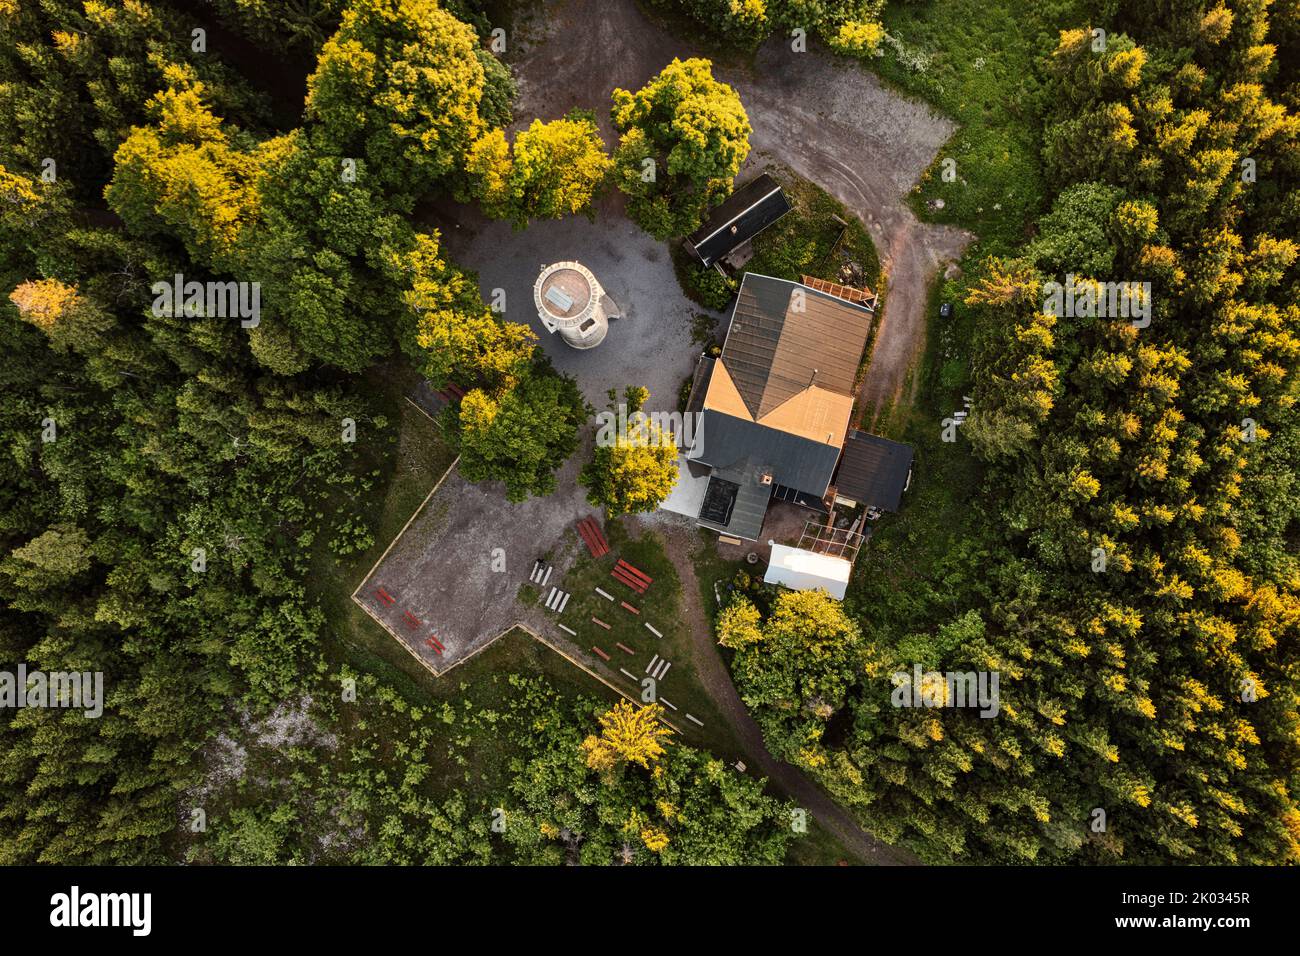 Germania, Turingia, Ilmenau, Kickelhahn, torre panoramica, locanda, luogo di riposo, foresta, vista dall'alto, foto aerea Foto Stock